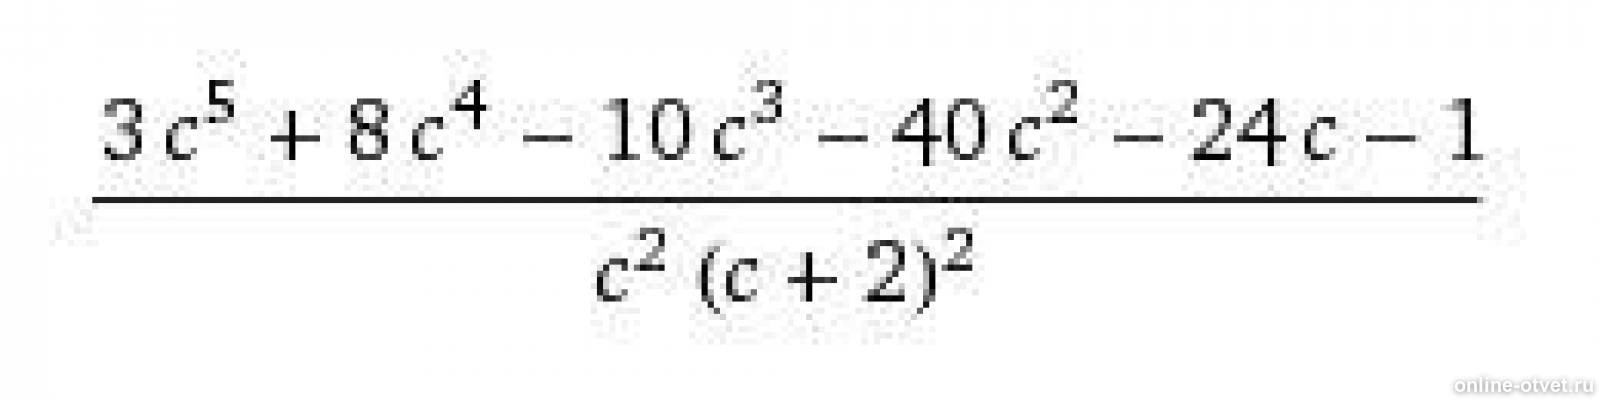 Упрости выражение 6 c - c^2 / 1-c : c^2/1-c. Упростить выражение (2-c)-c(c+4) при c 0.5.